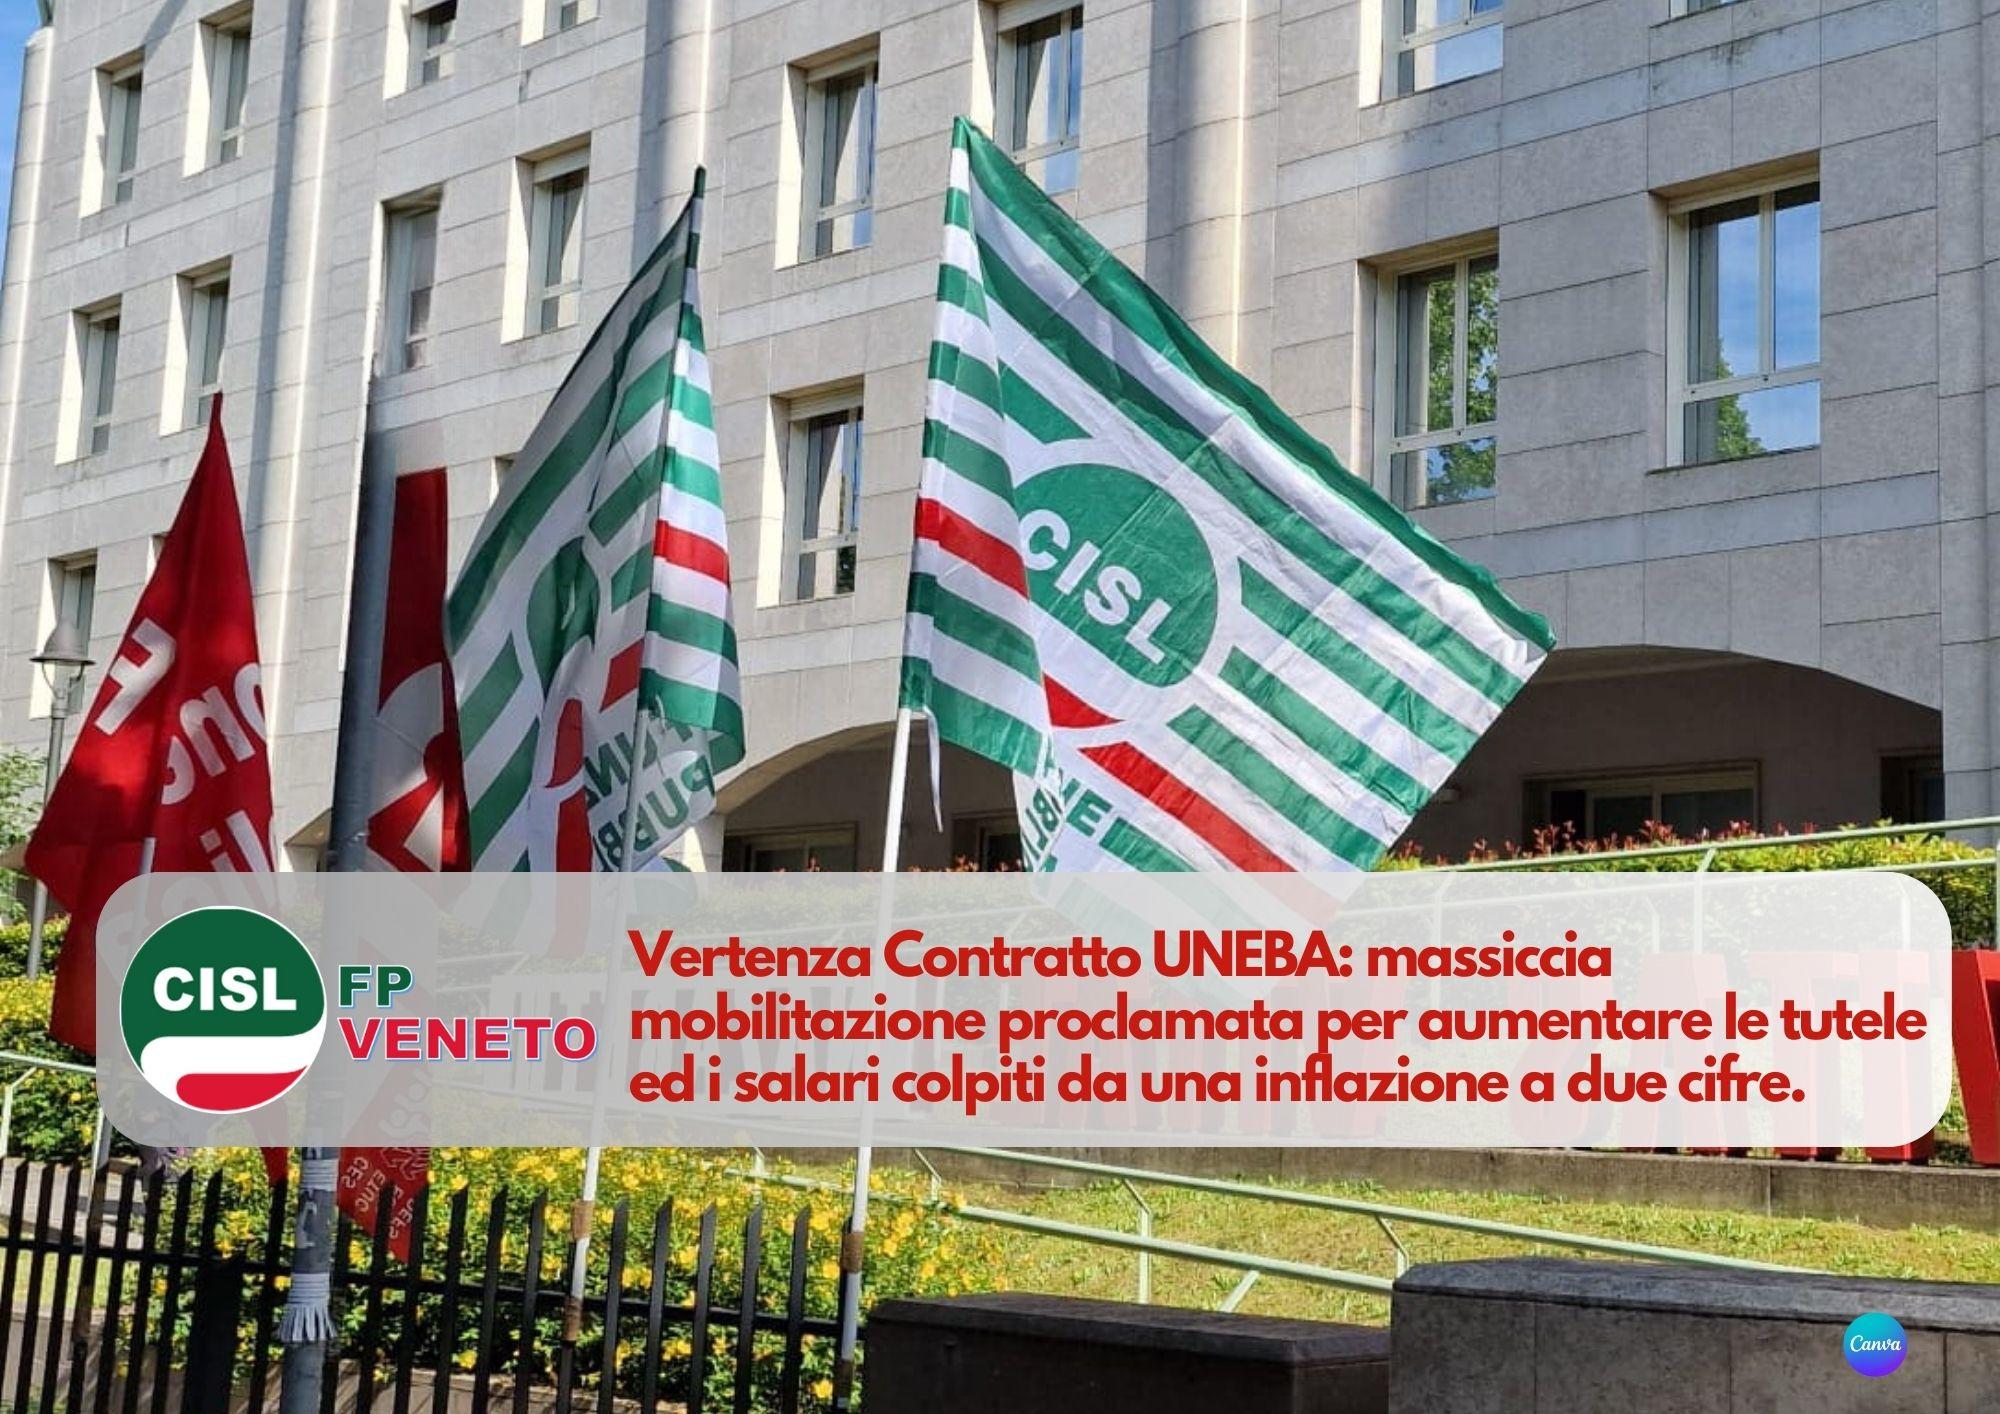 CISL FP Veneto. UNEBA dopo il mancato accordo al ministero FP Veneto si mobilita sui territori